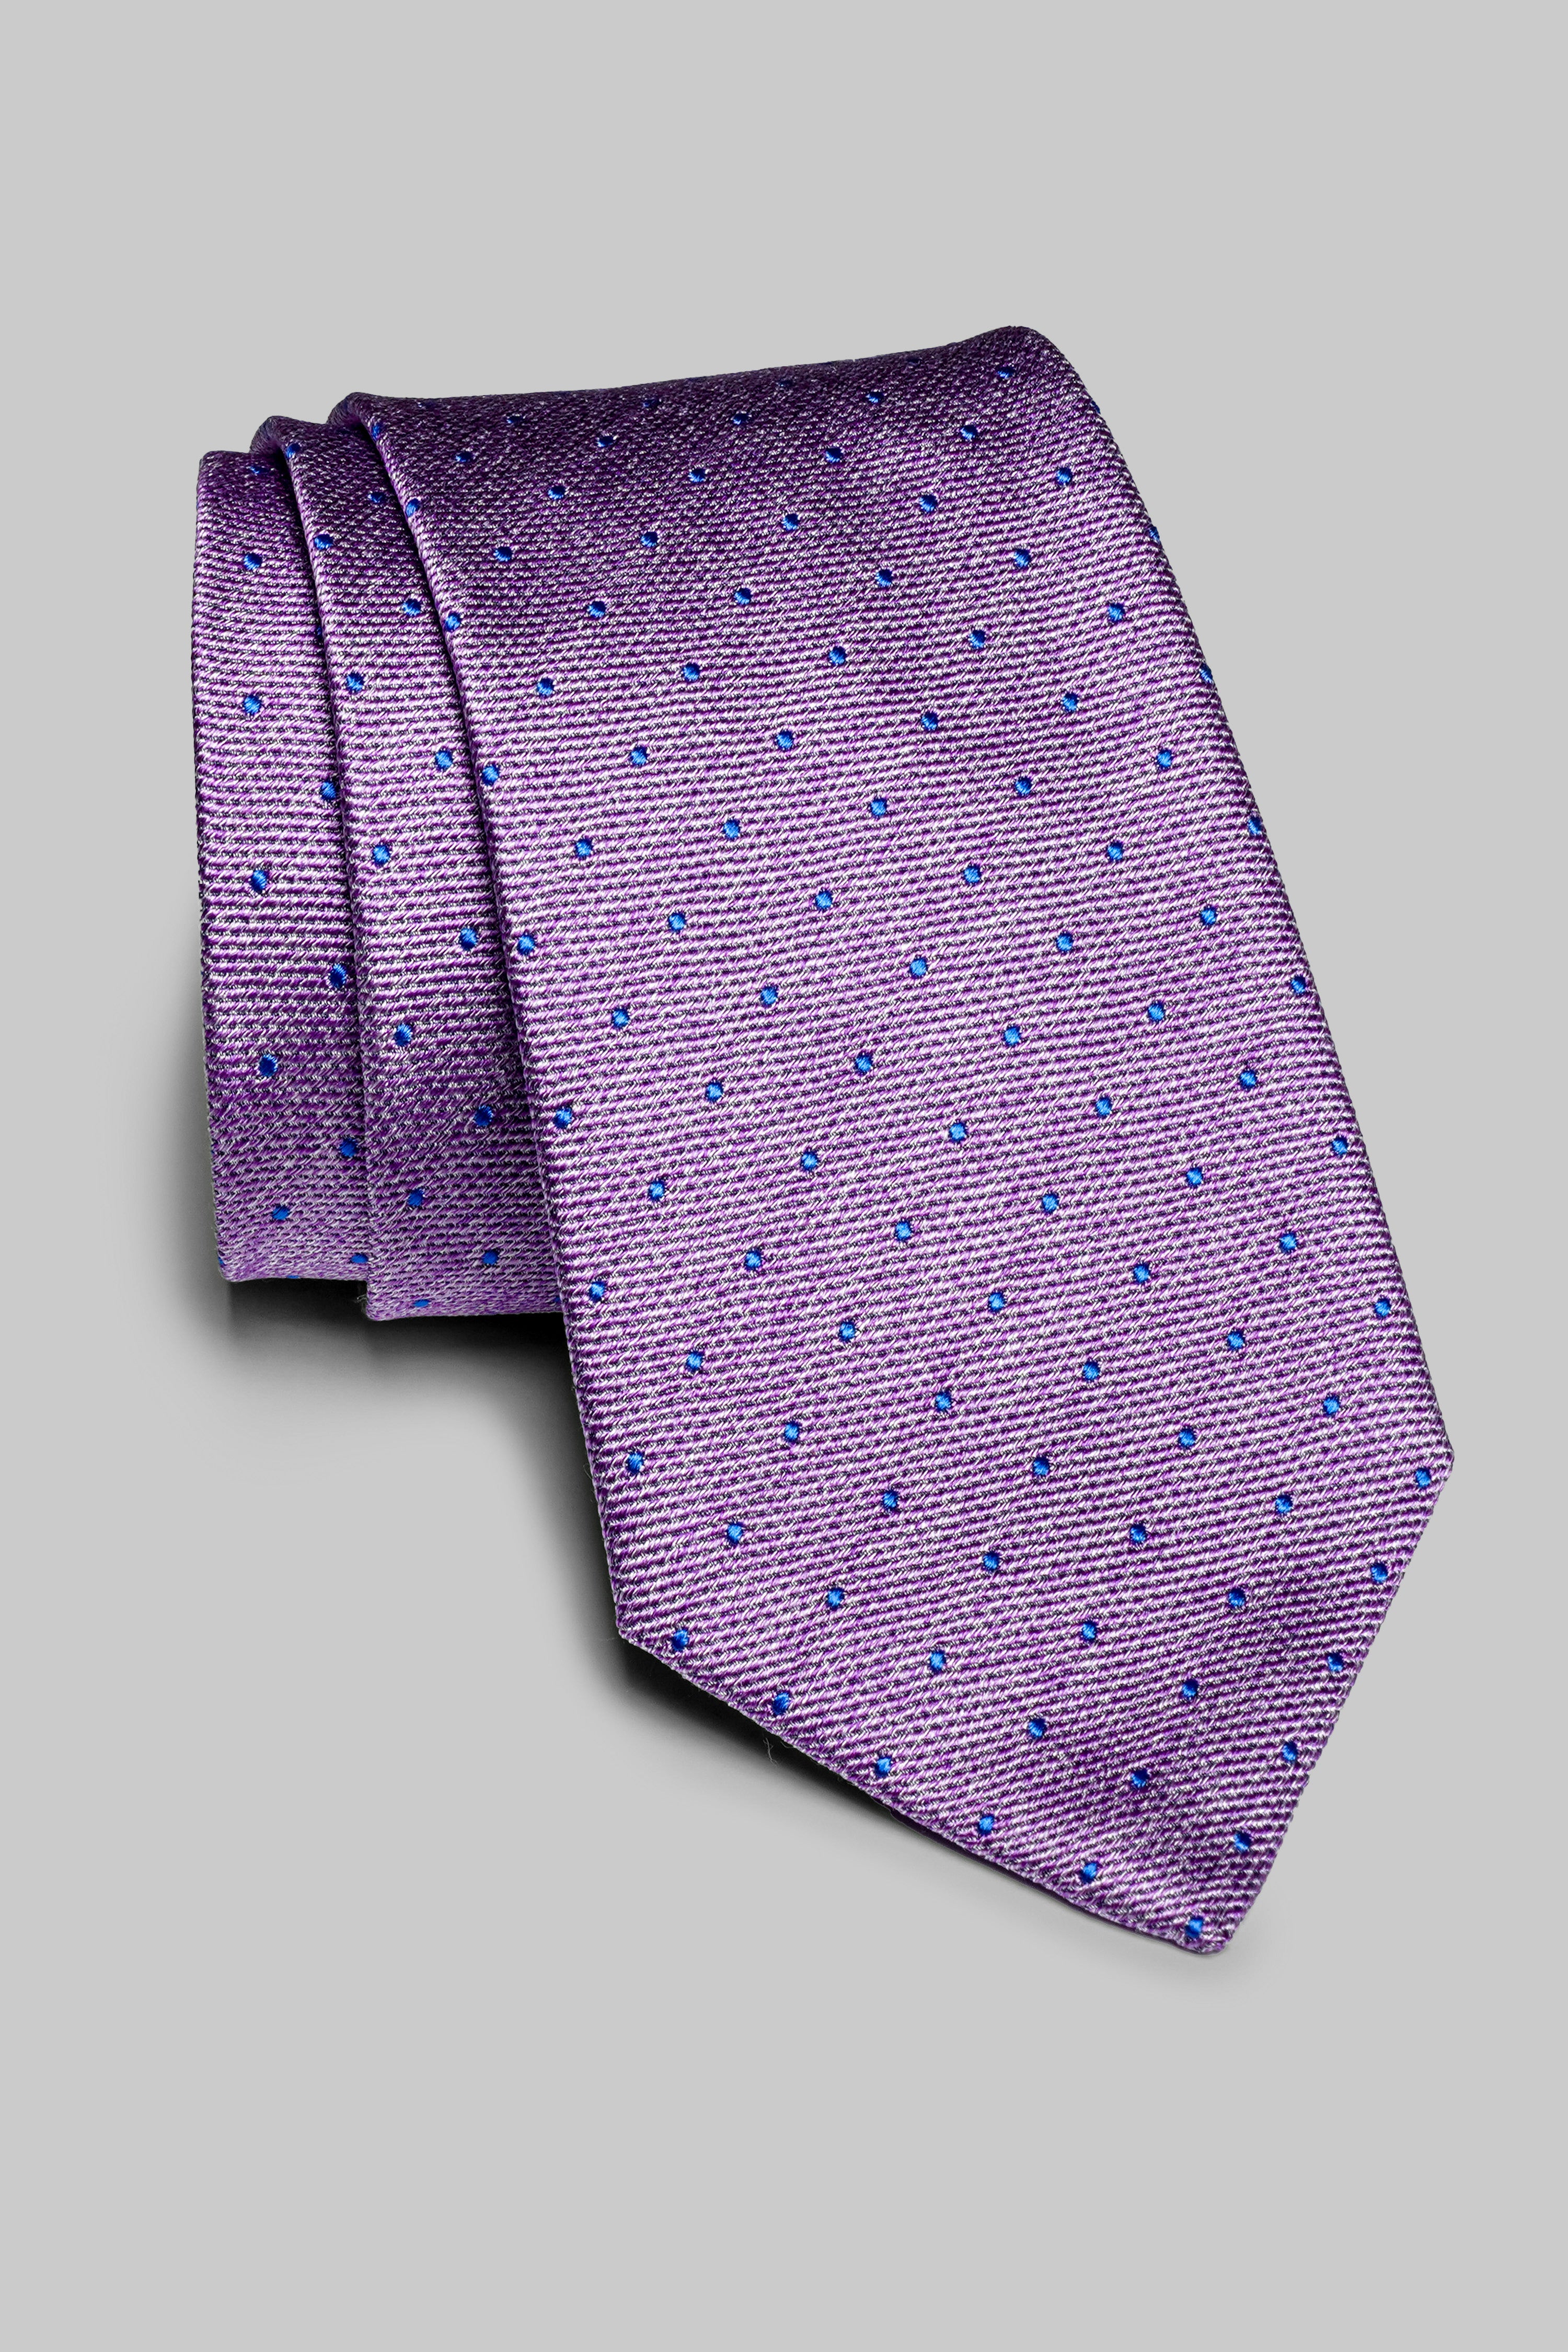 Vue alternative Metcalfe cravate en soie en lilas